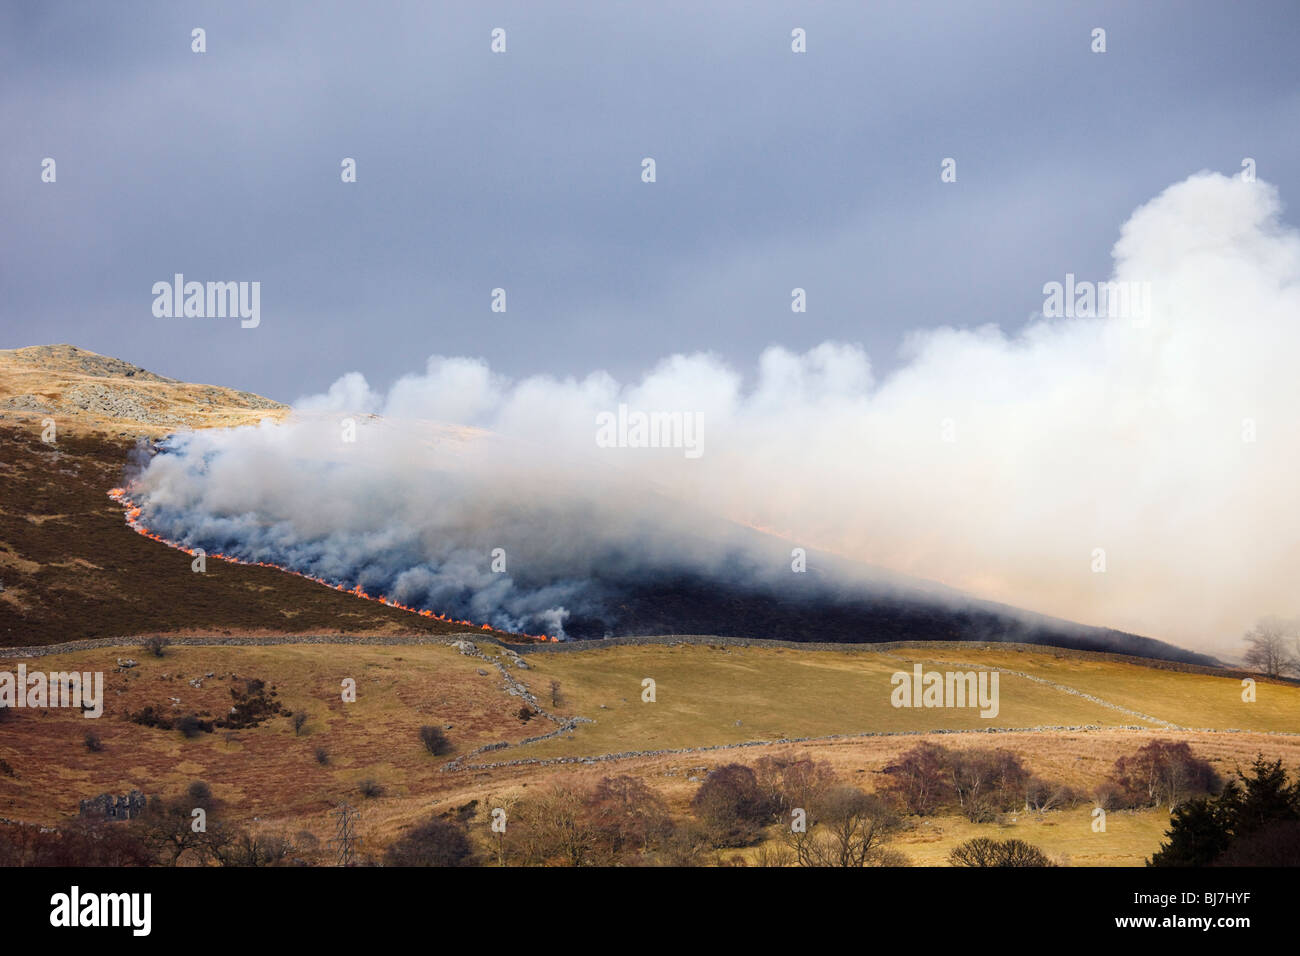 Escupiendo nubes de humo de un incendio de pasto. País de Gales, Reino Unido, Gran Bretaña. Foto de stock